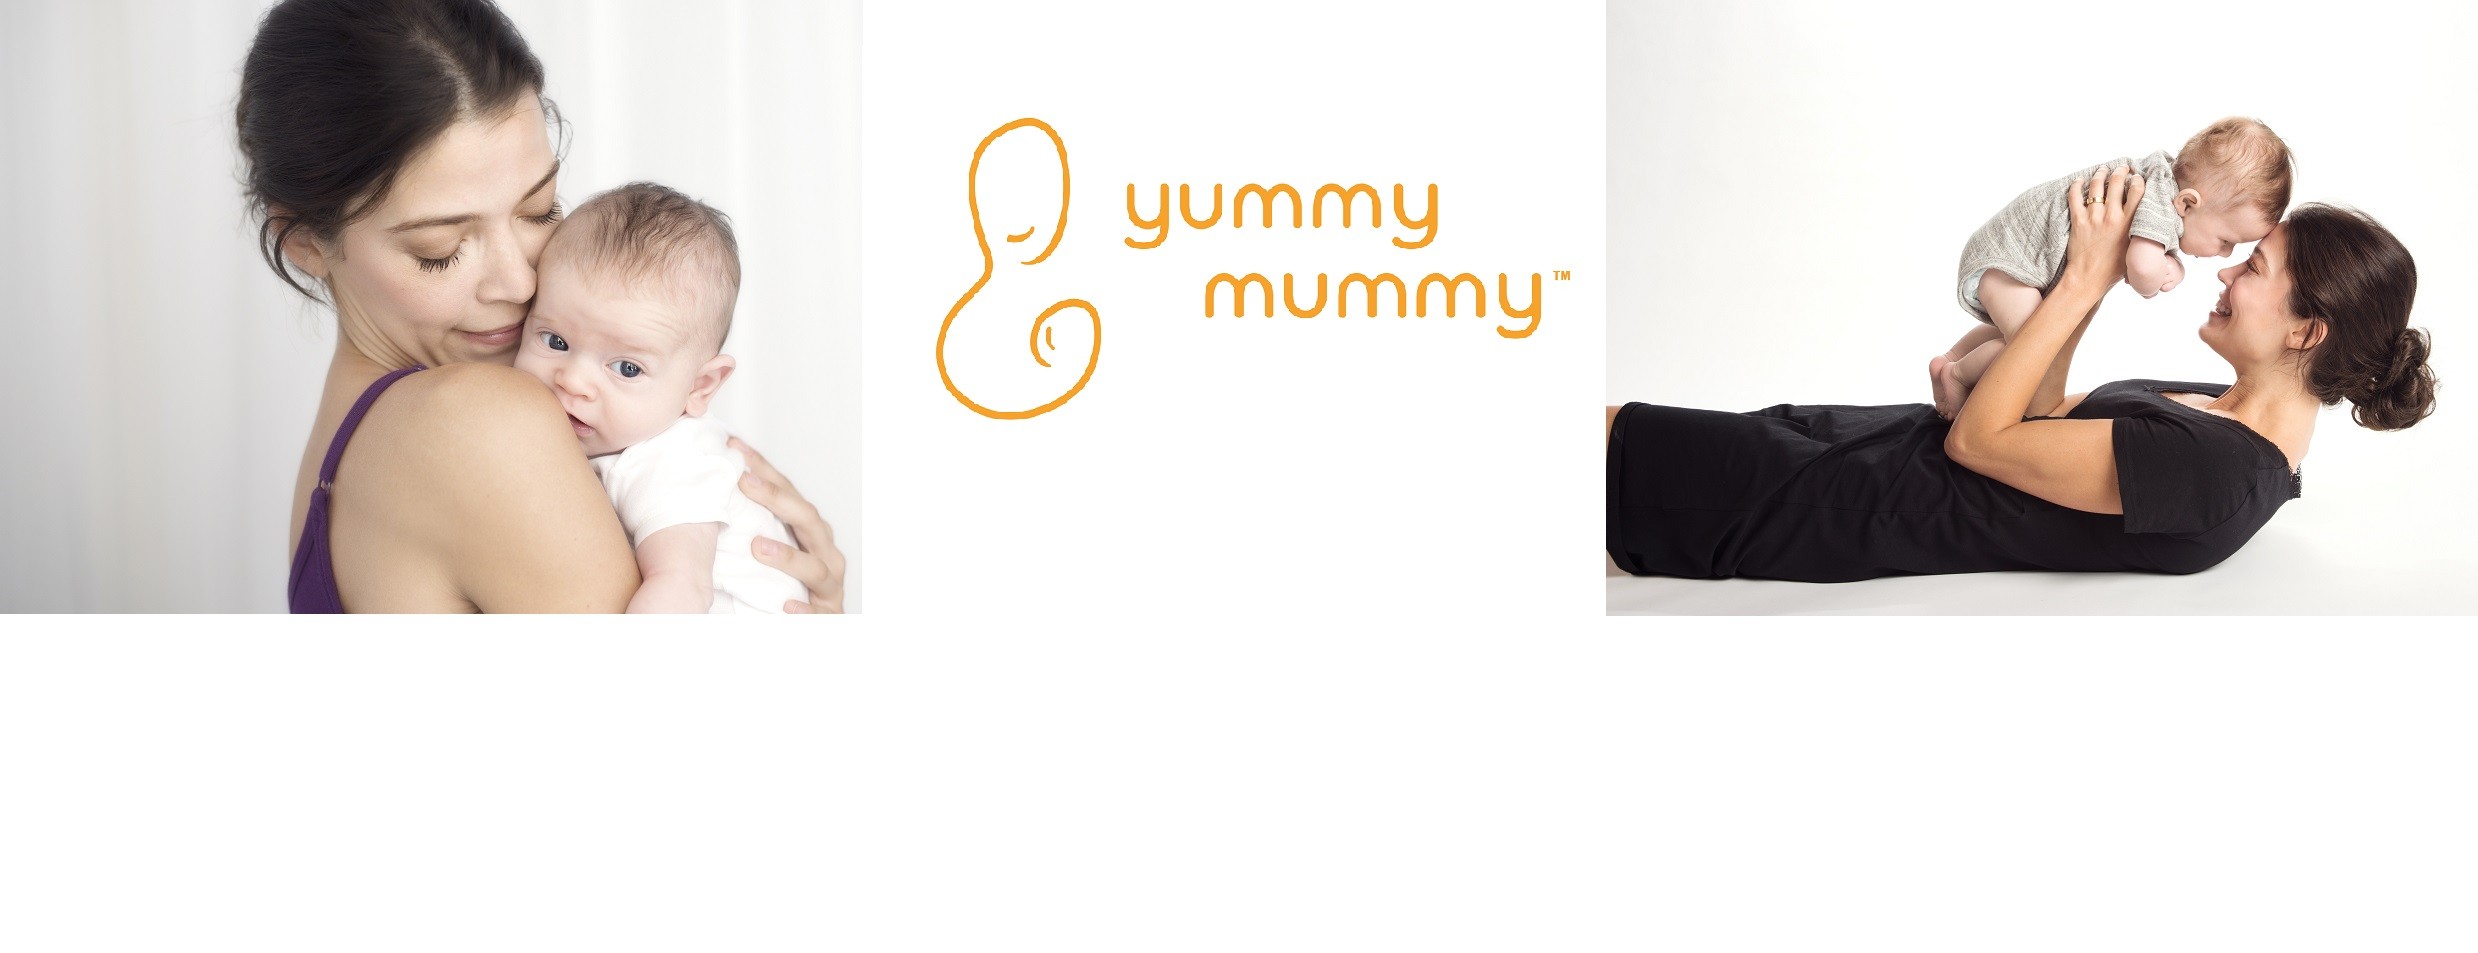 Yummy mummy pics